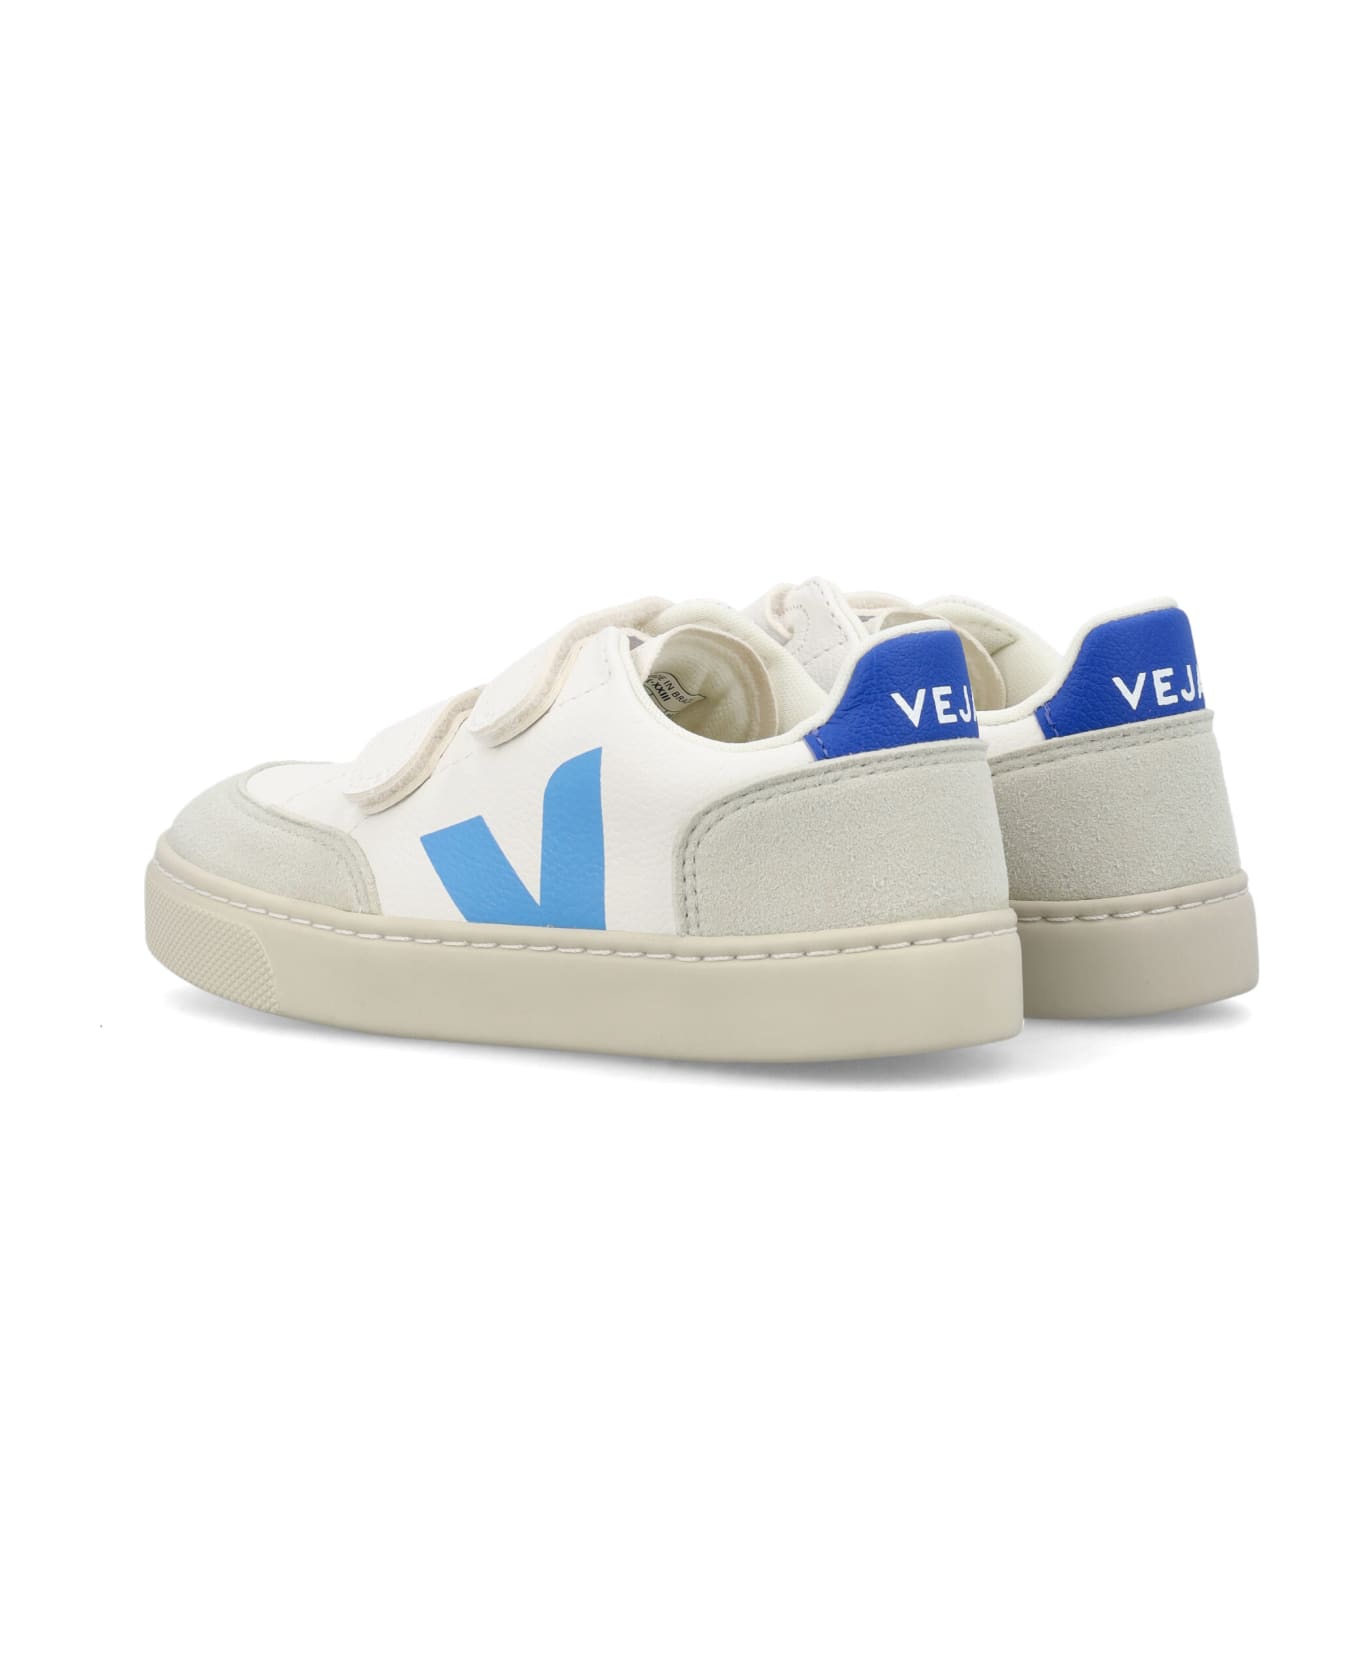 Veja Small V-12 Sneakers - WHITE/BLUE